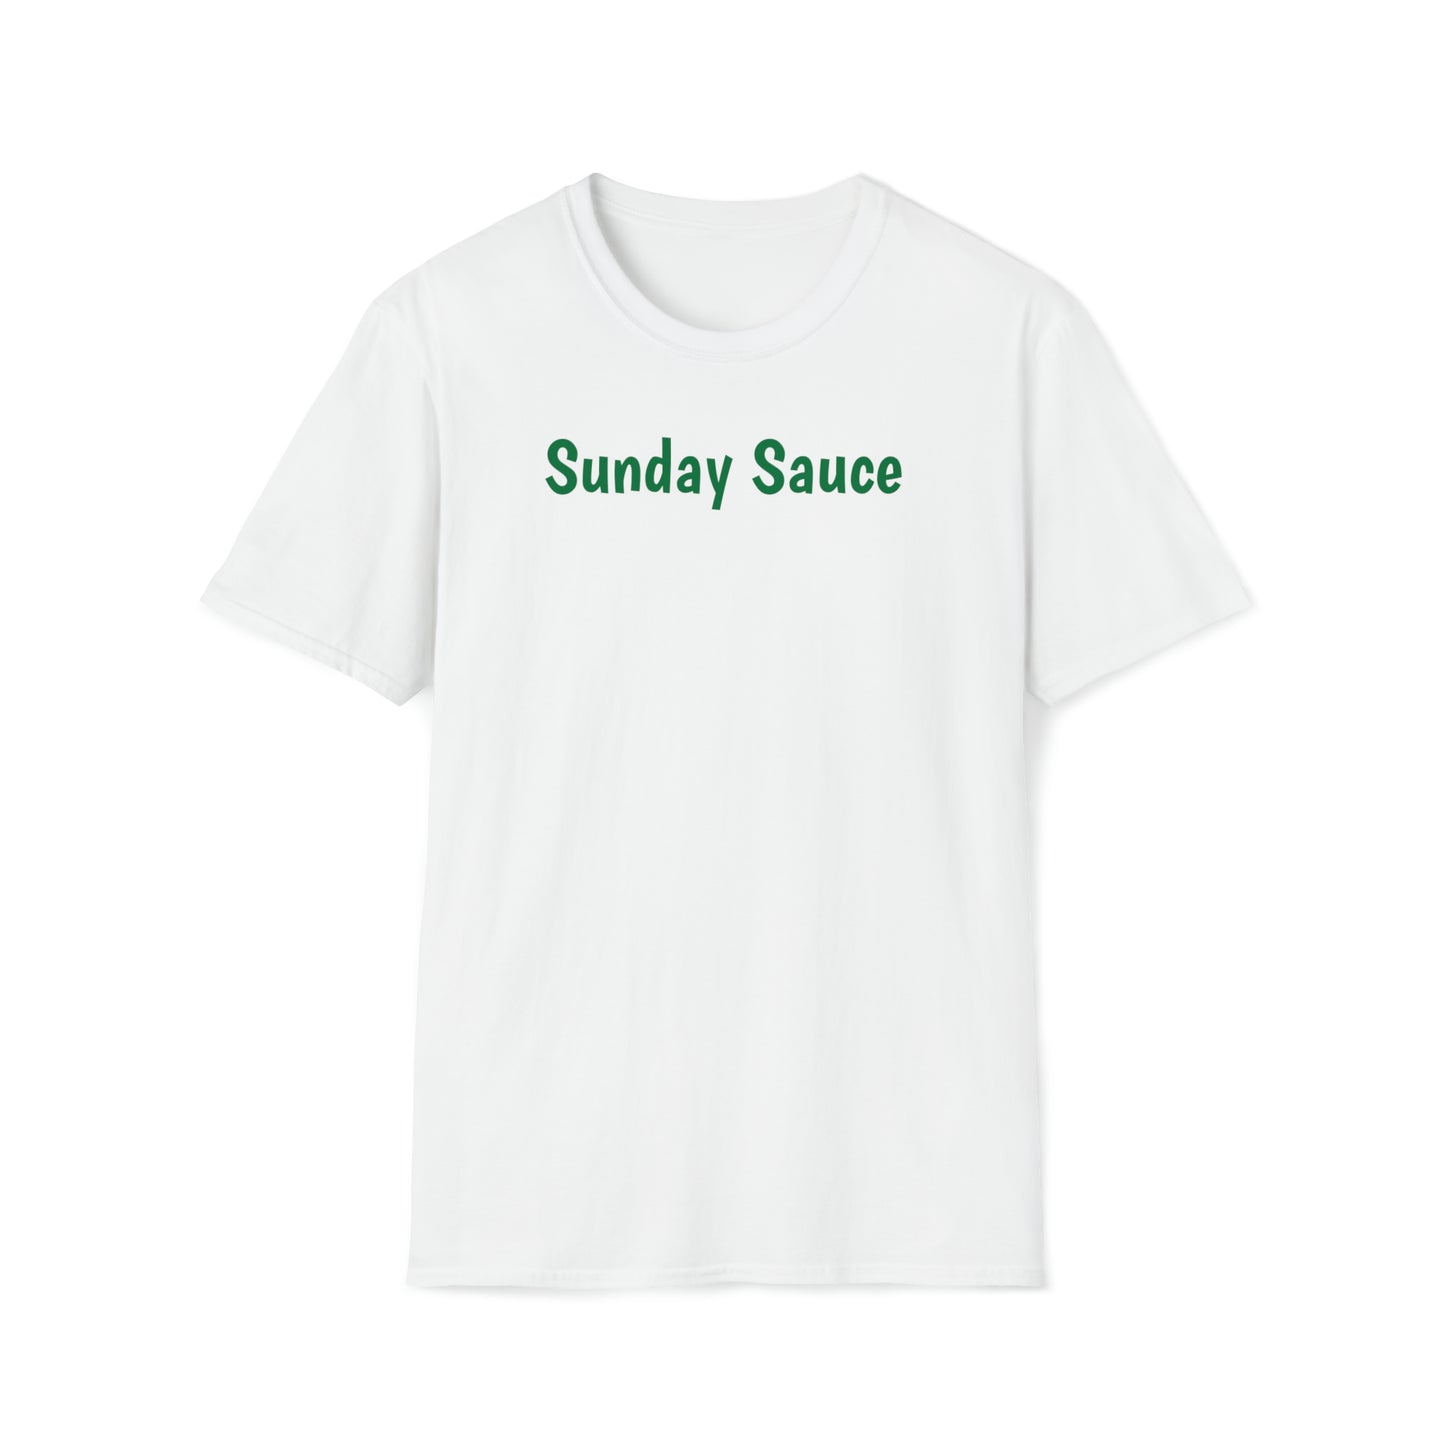 Sunday Sauce Shirt